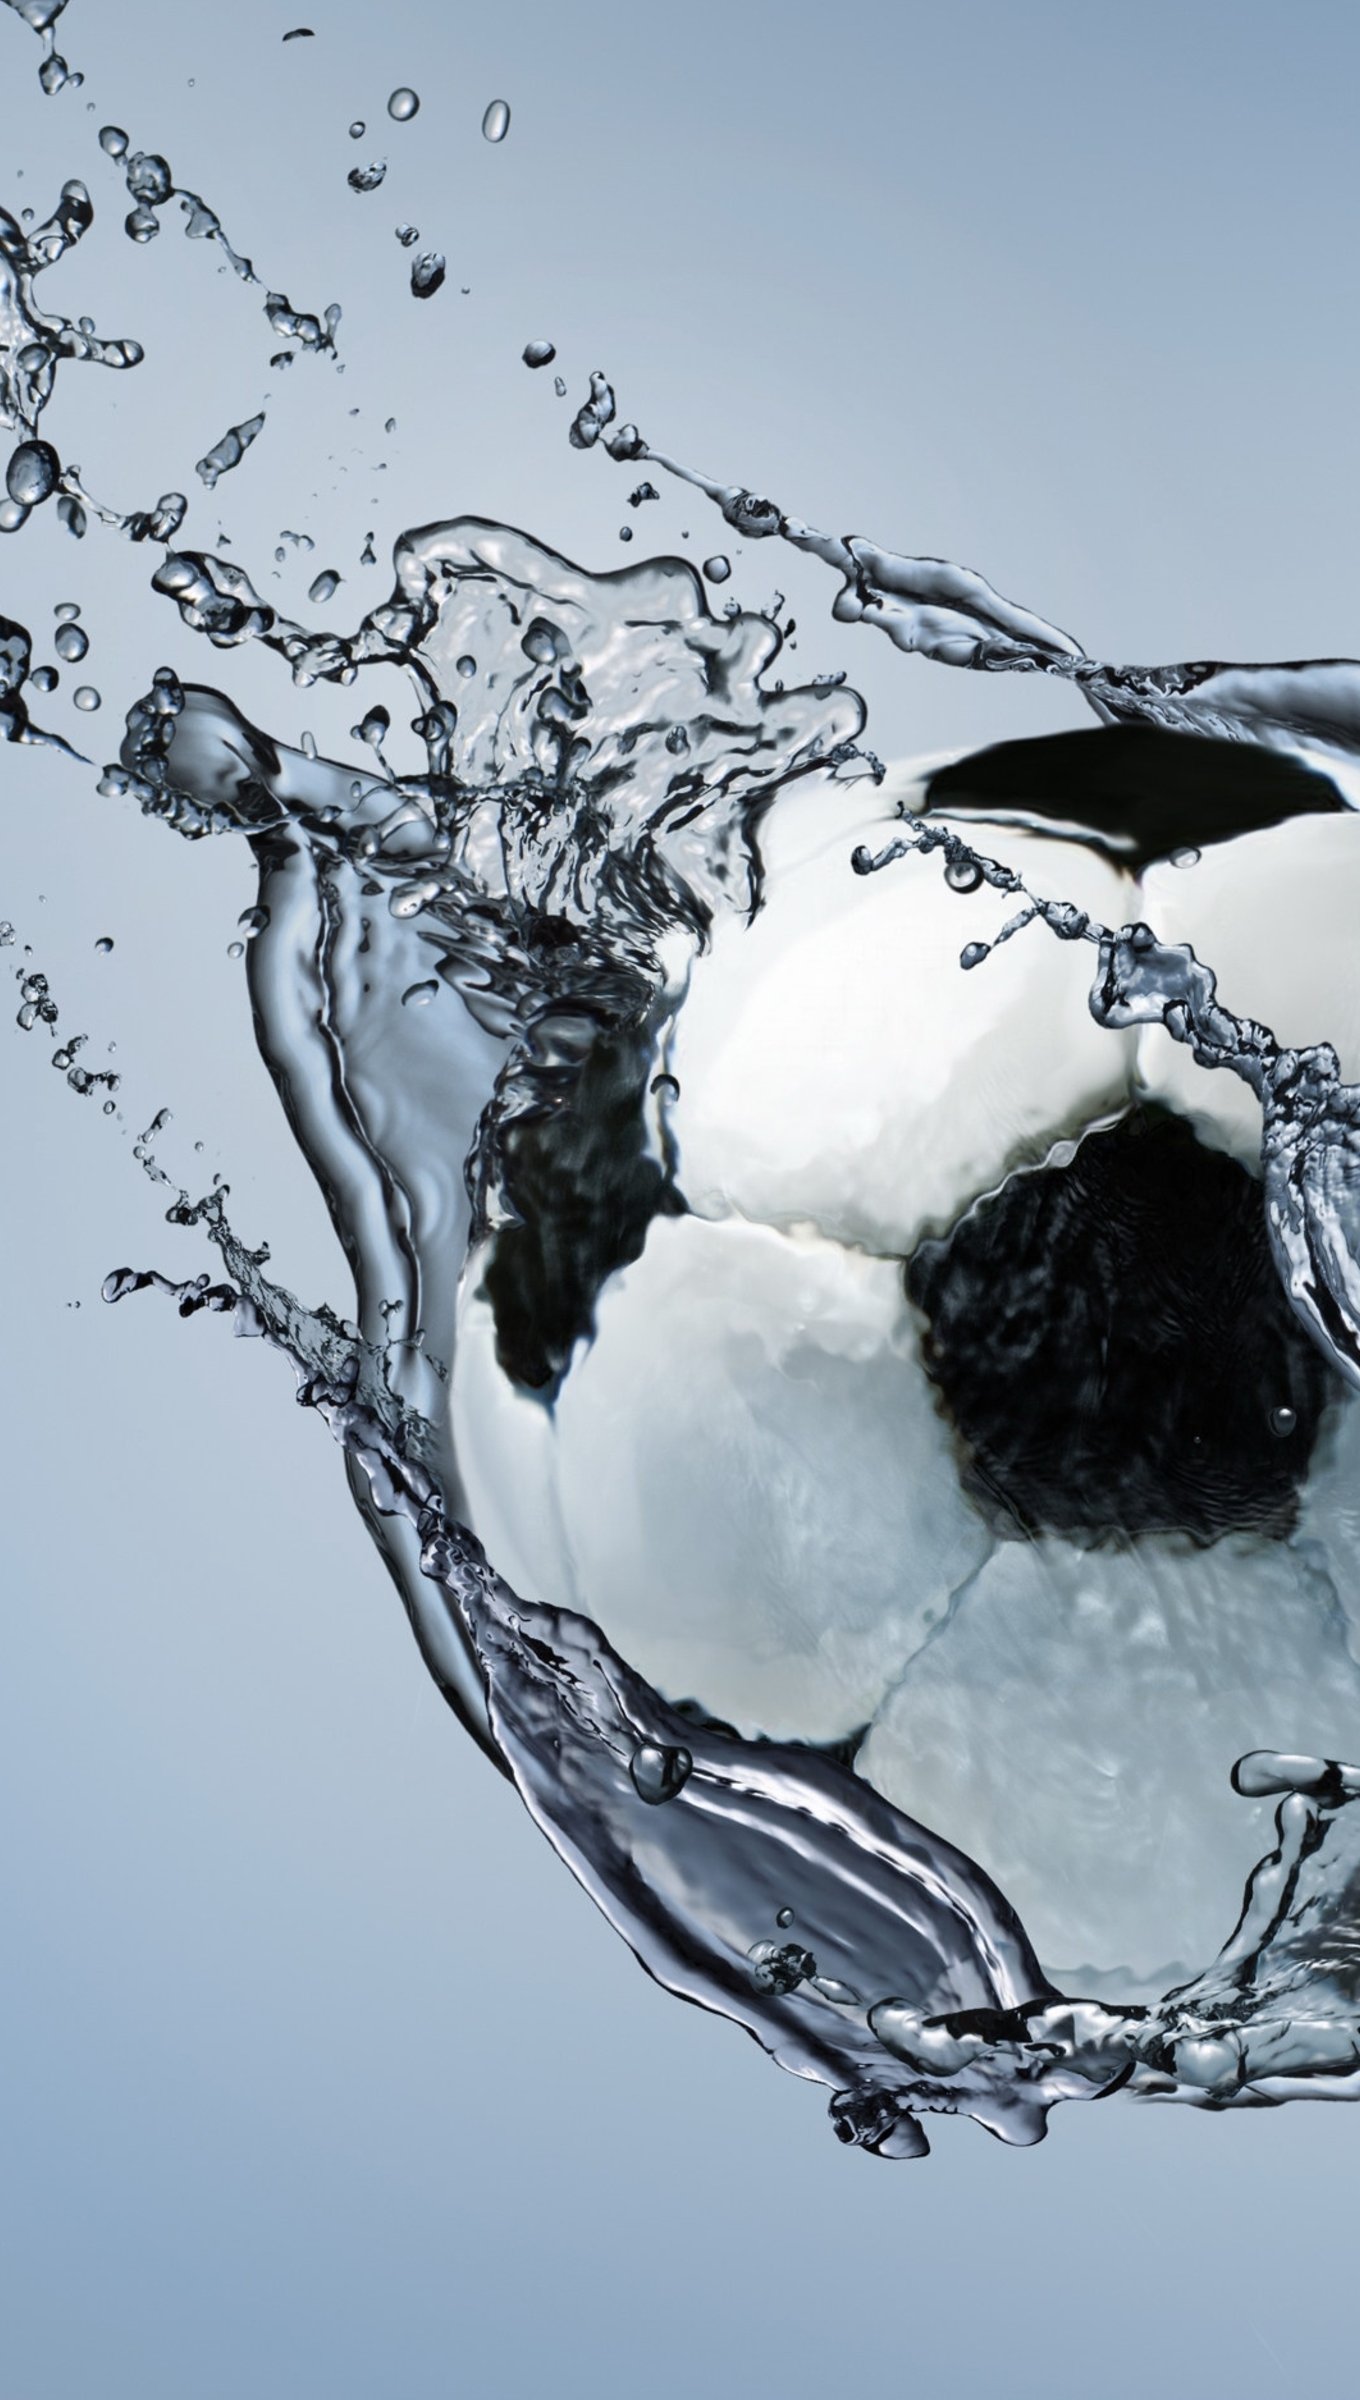 Fondos de pantalla Balón de fútbol atravesando agua Vertical